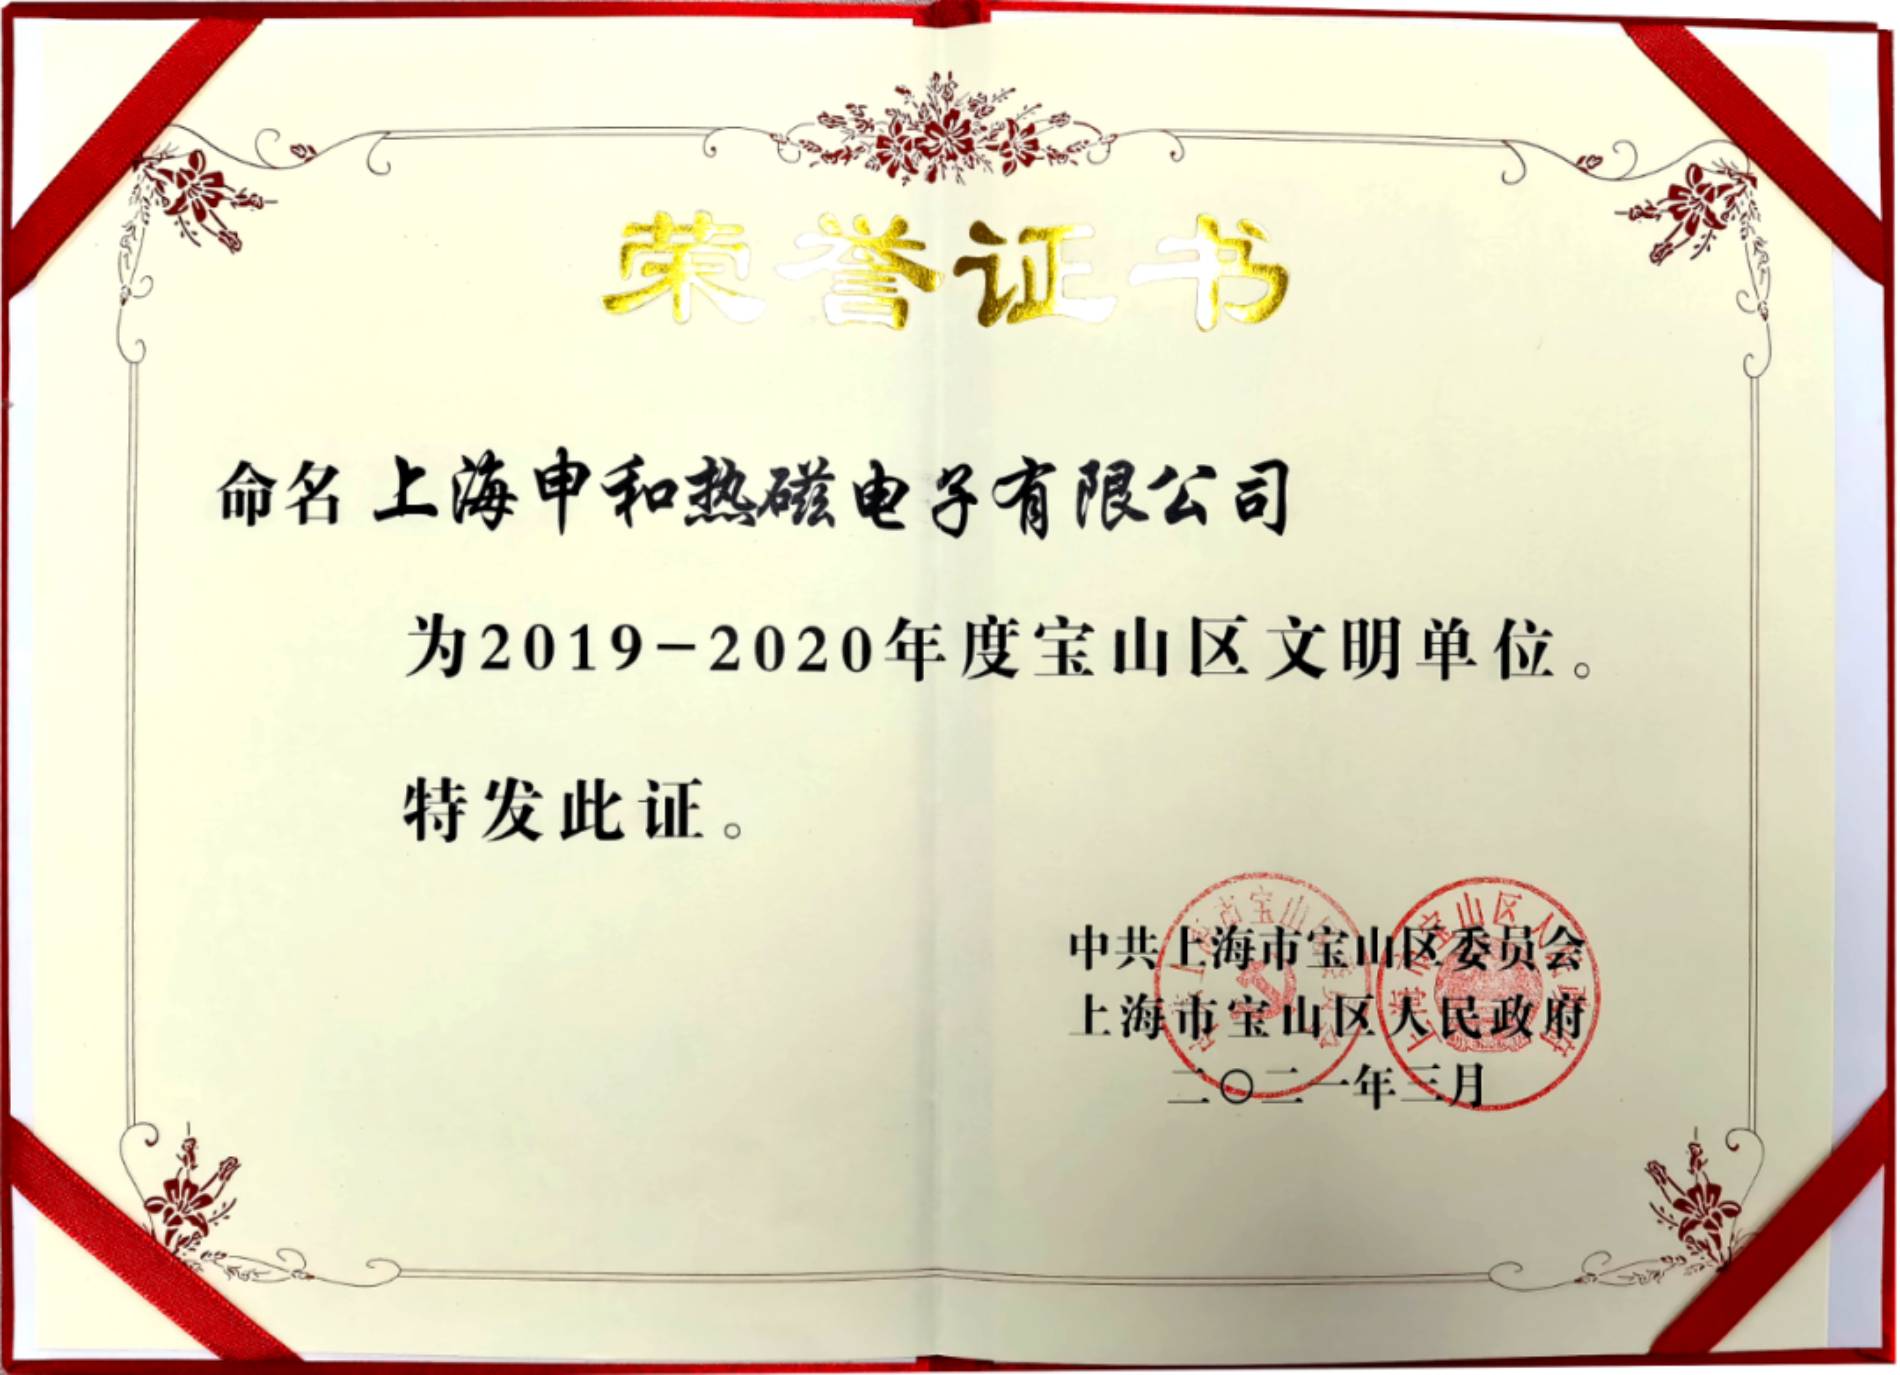 上海申和热磁电子有限公司荣获2019-2020年度宝山区文明单位